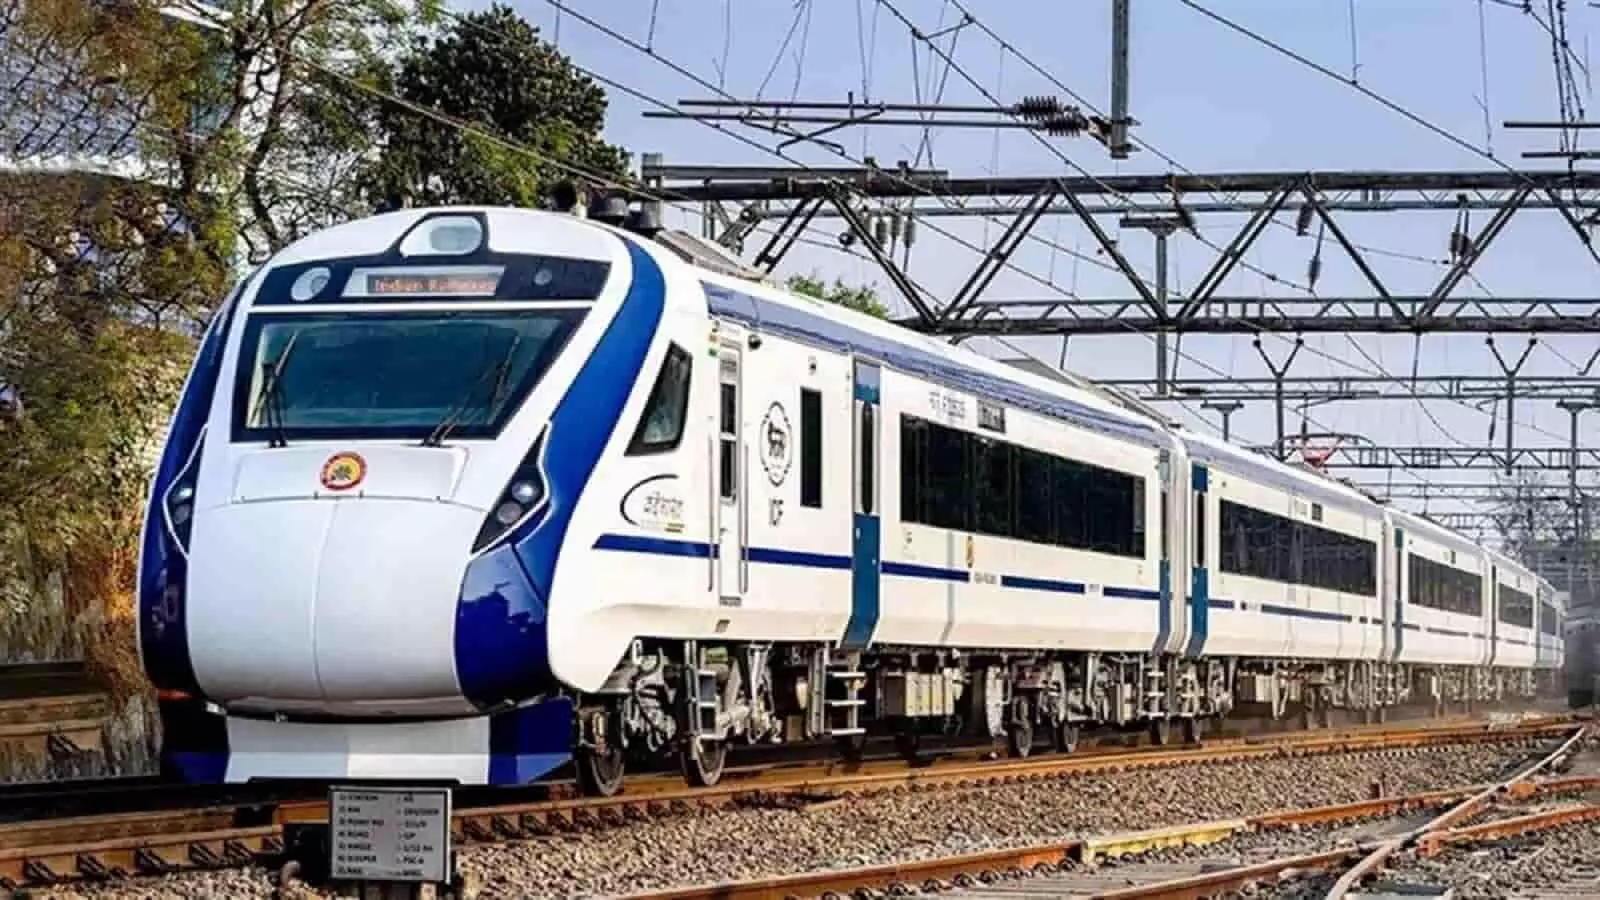 गुड न्यूज़! रीवा को एक नहीं दो वंदे भारत एक्सप्रेस ट्रेन मिलेंगी? आई LATEST UPDATE